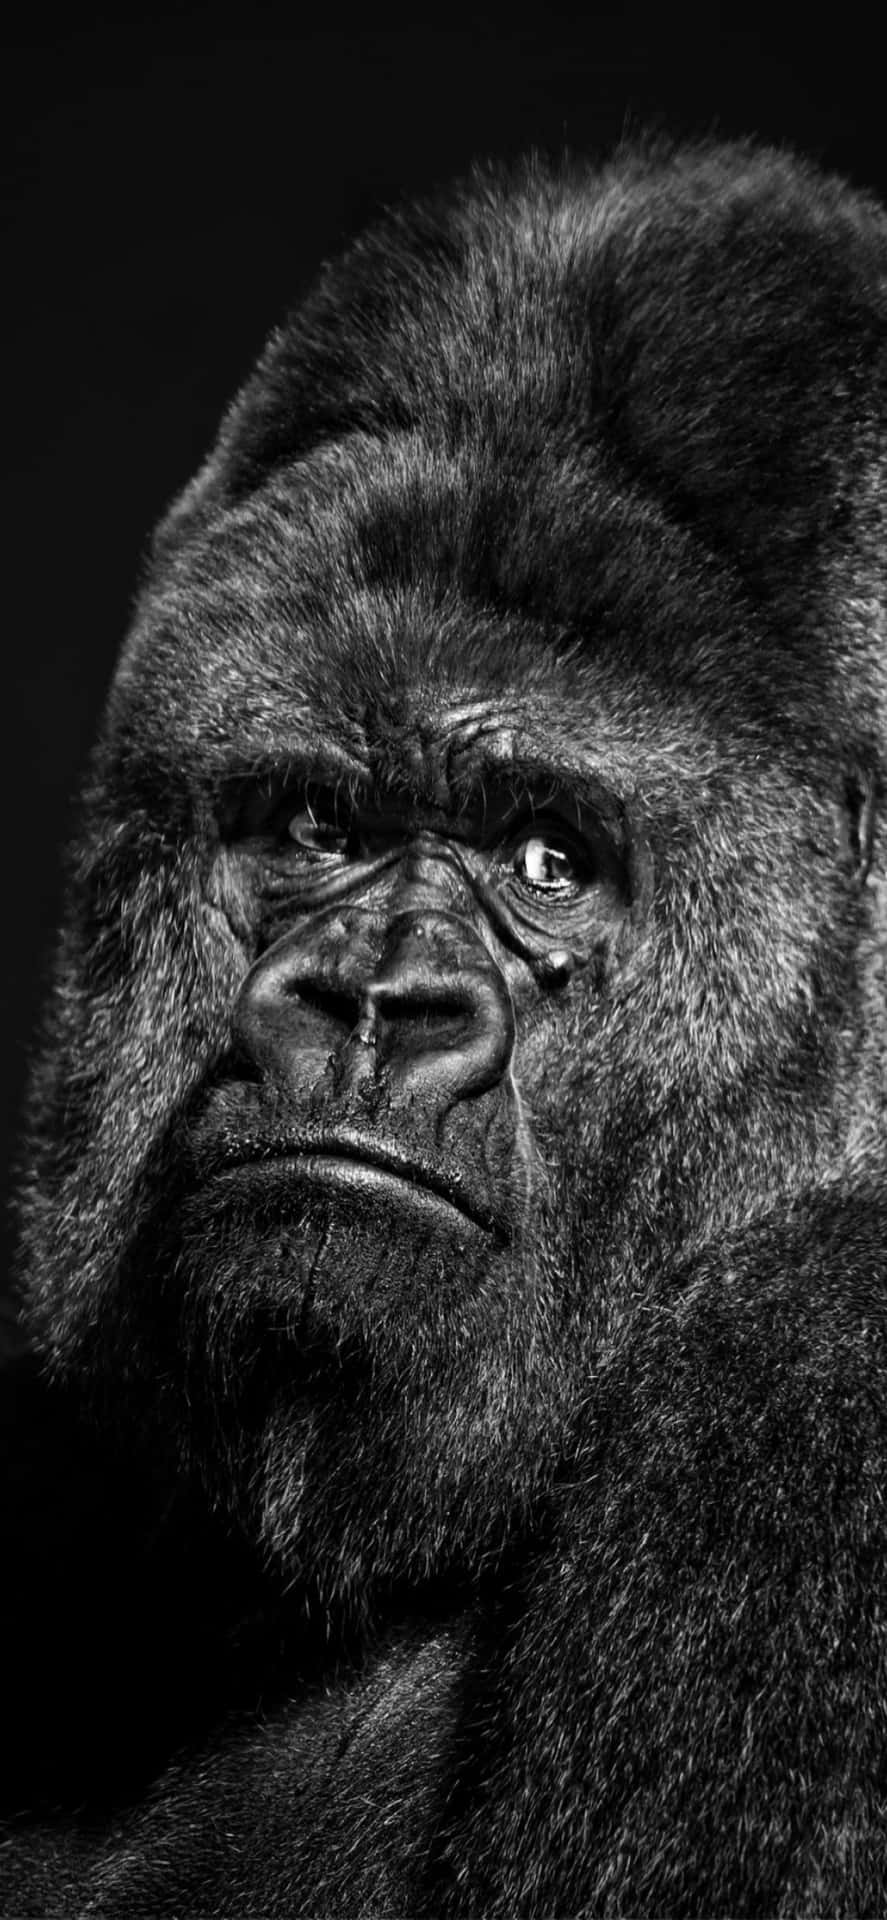 Unrobusto Gorilla Tiene In Mano Un Iphone X